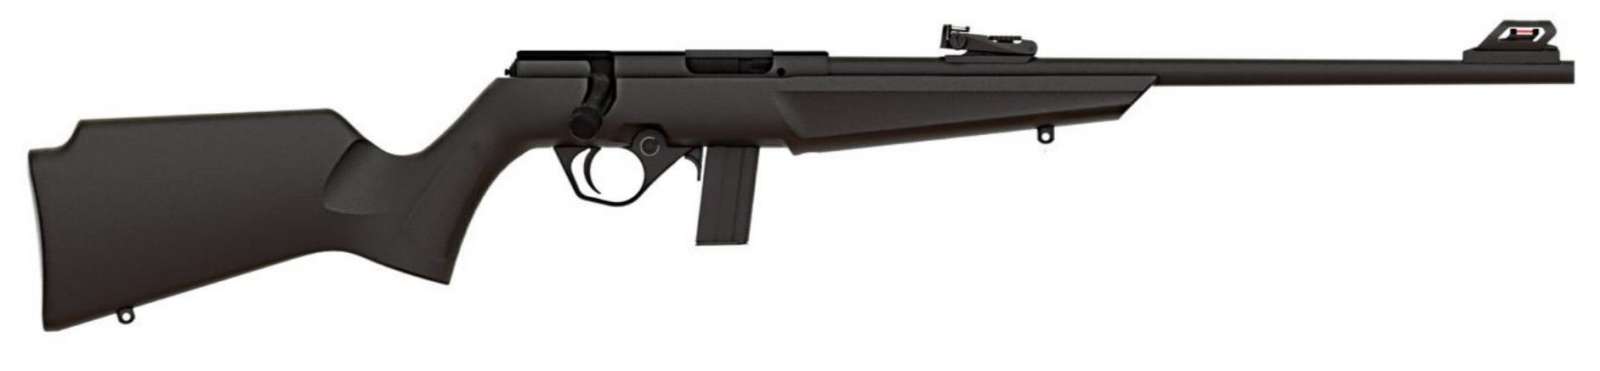 Rossi Compact Bolt Action Rimfire Rifle - Black | .22 LR | 16.5" Barrel | 1-img-1